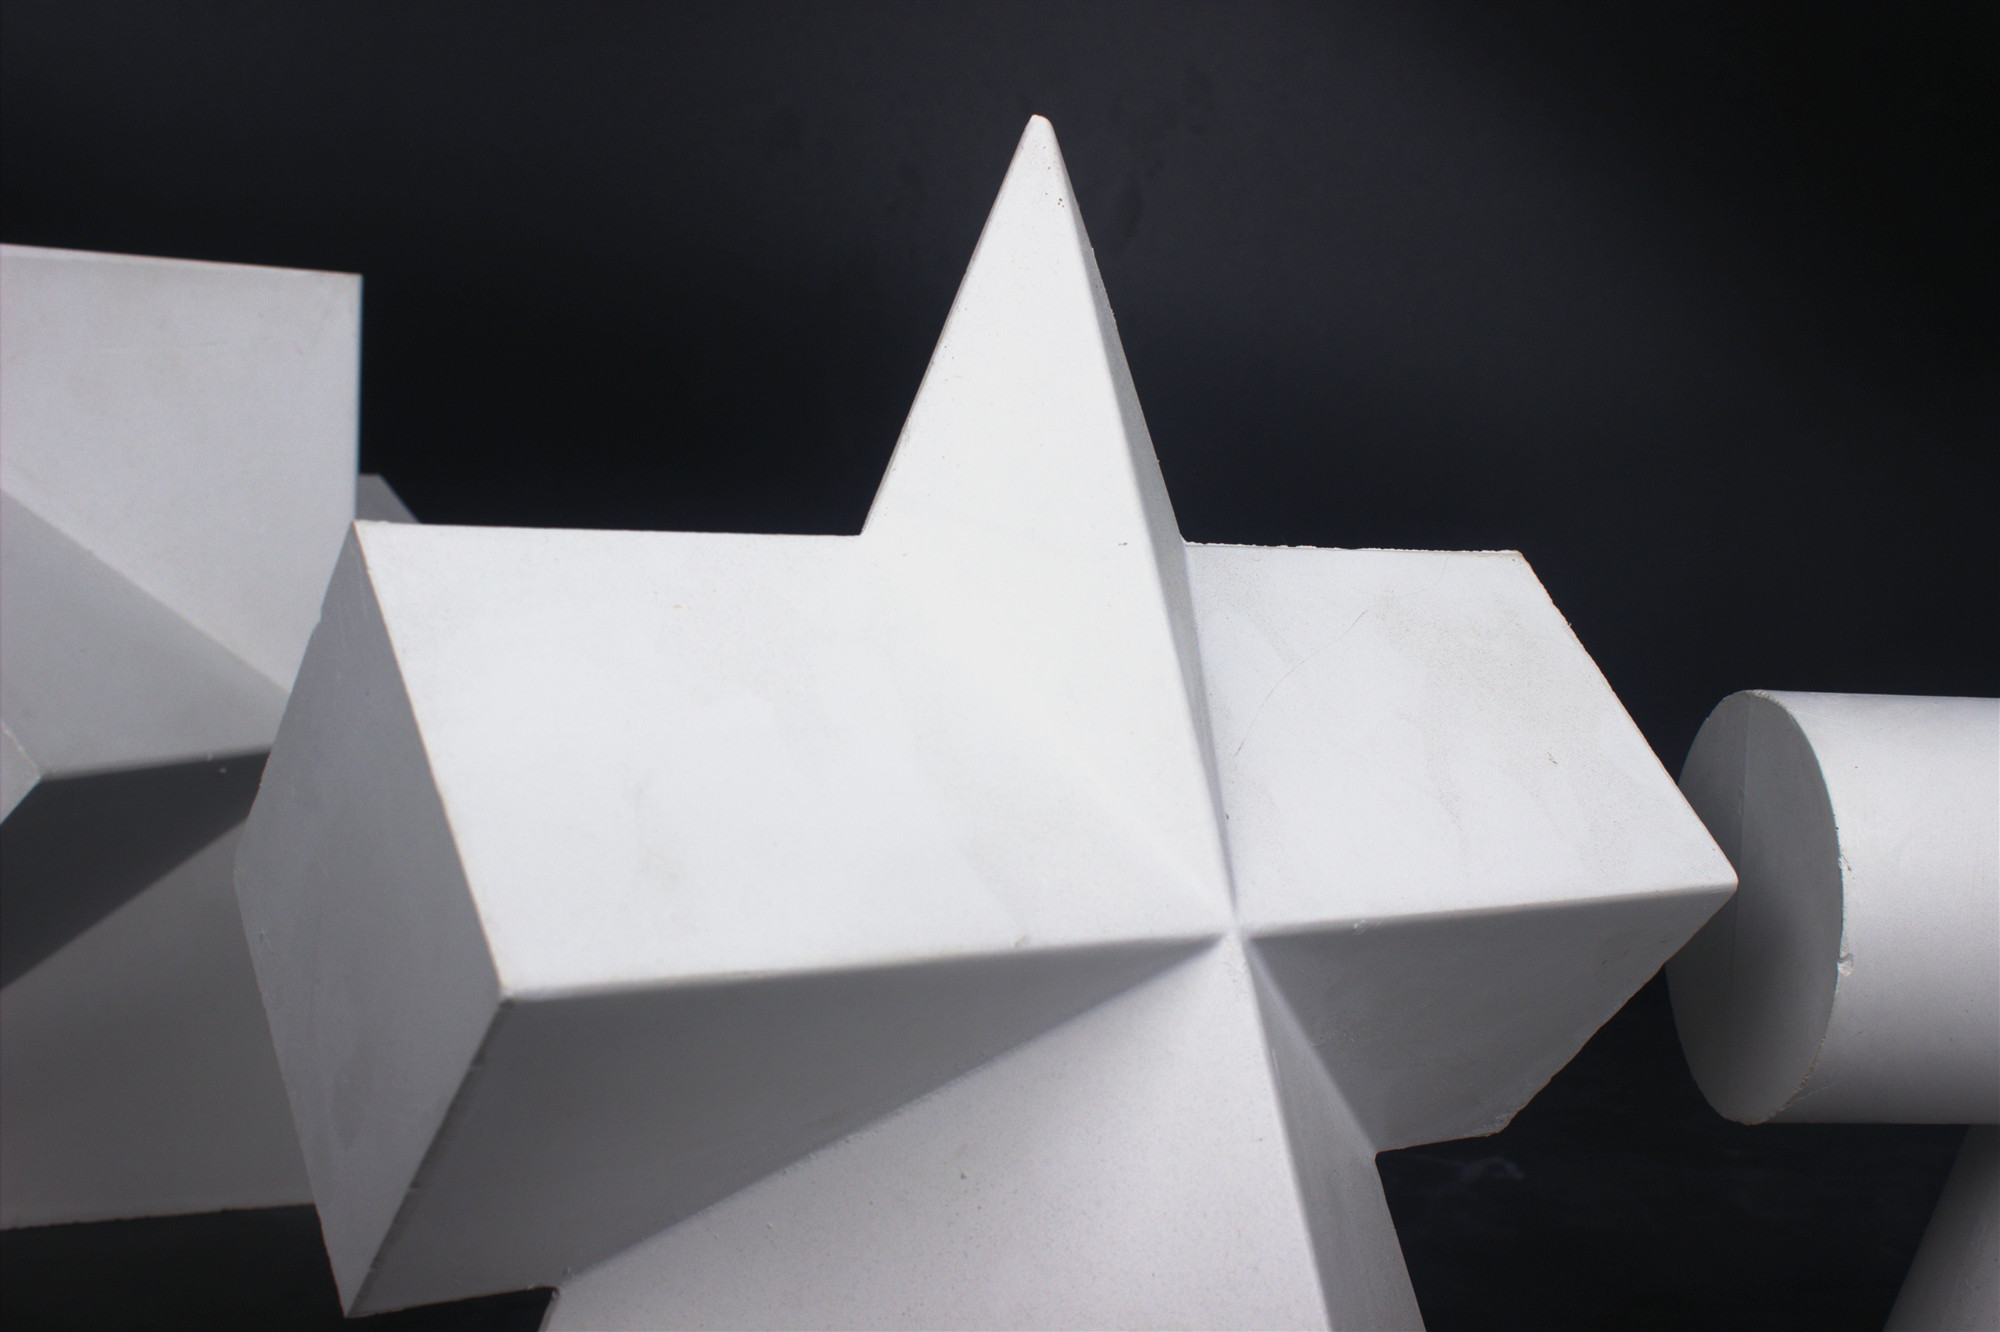 几何体石膏素描石膏几何体模型素描专用石膏像16个一套几何套模型